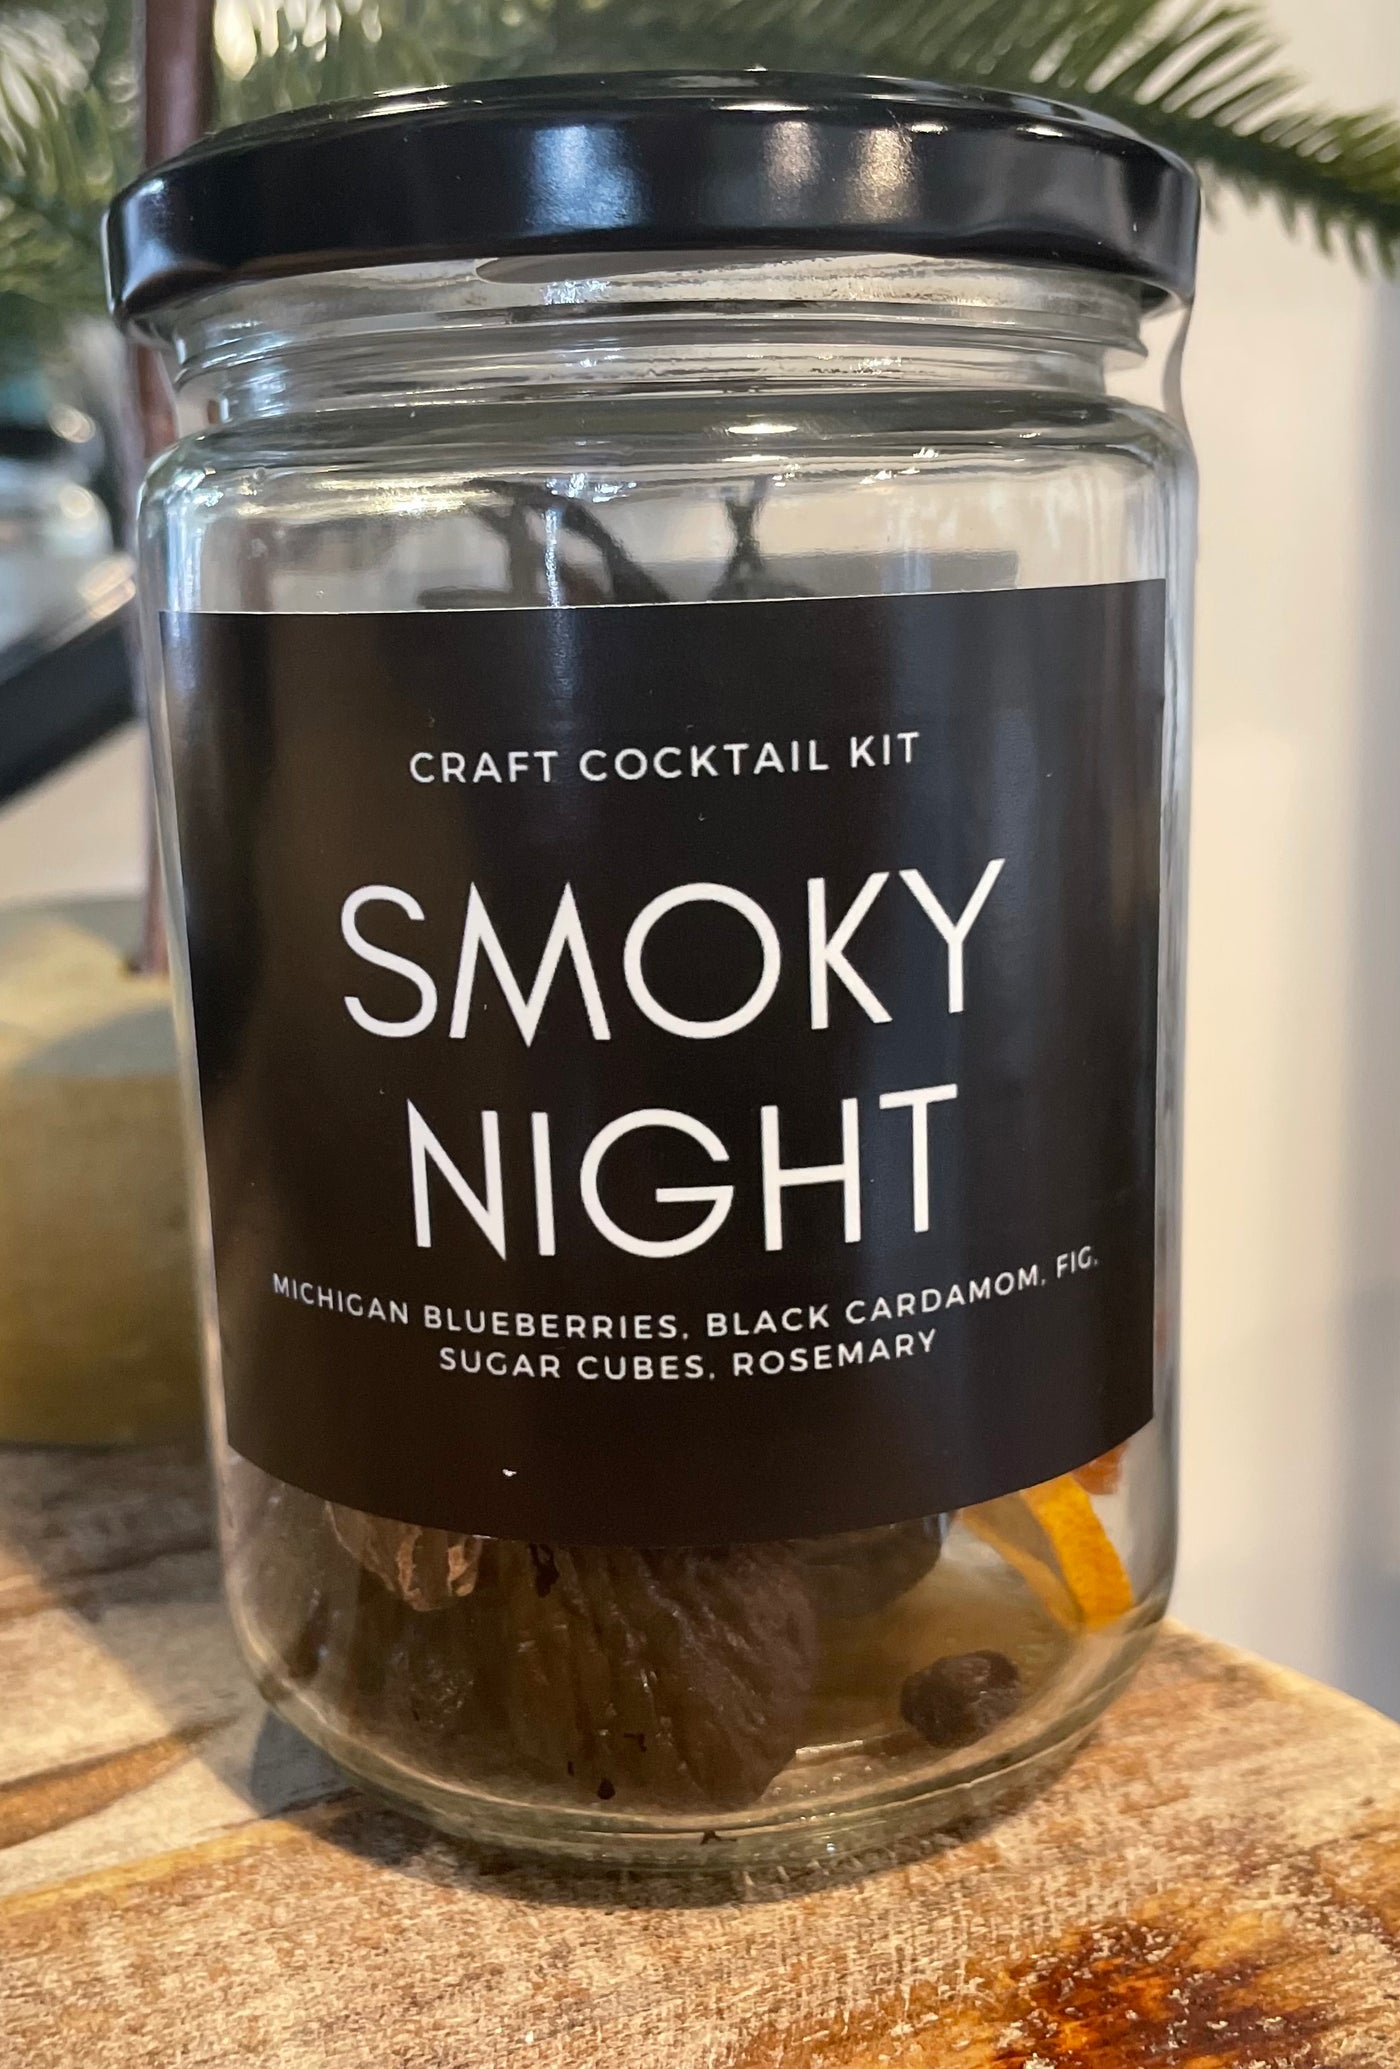 Smoky Night Craft Cocktail Kit